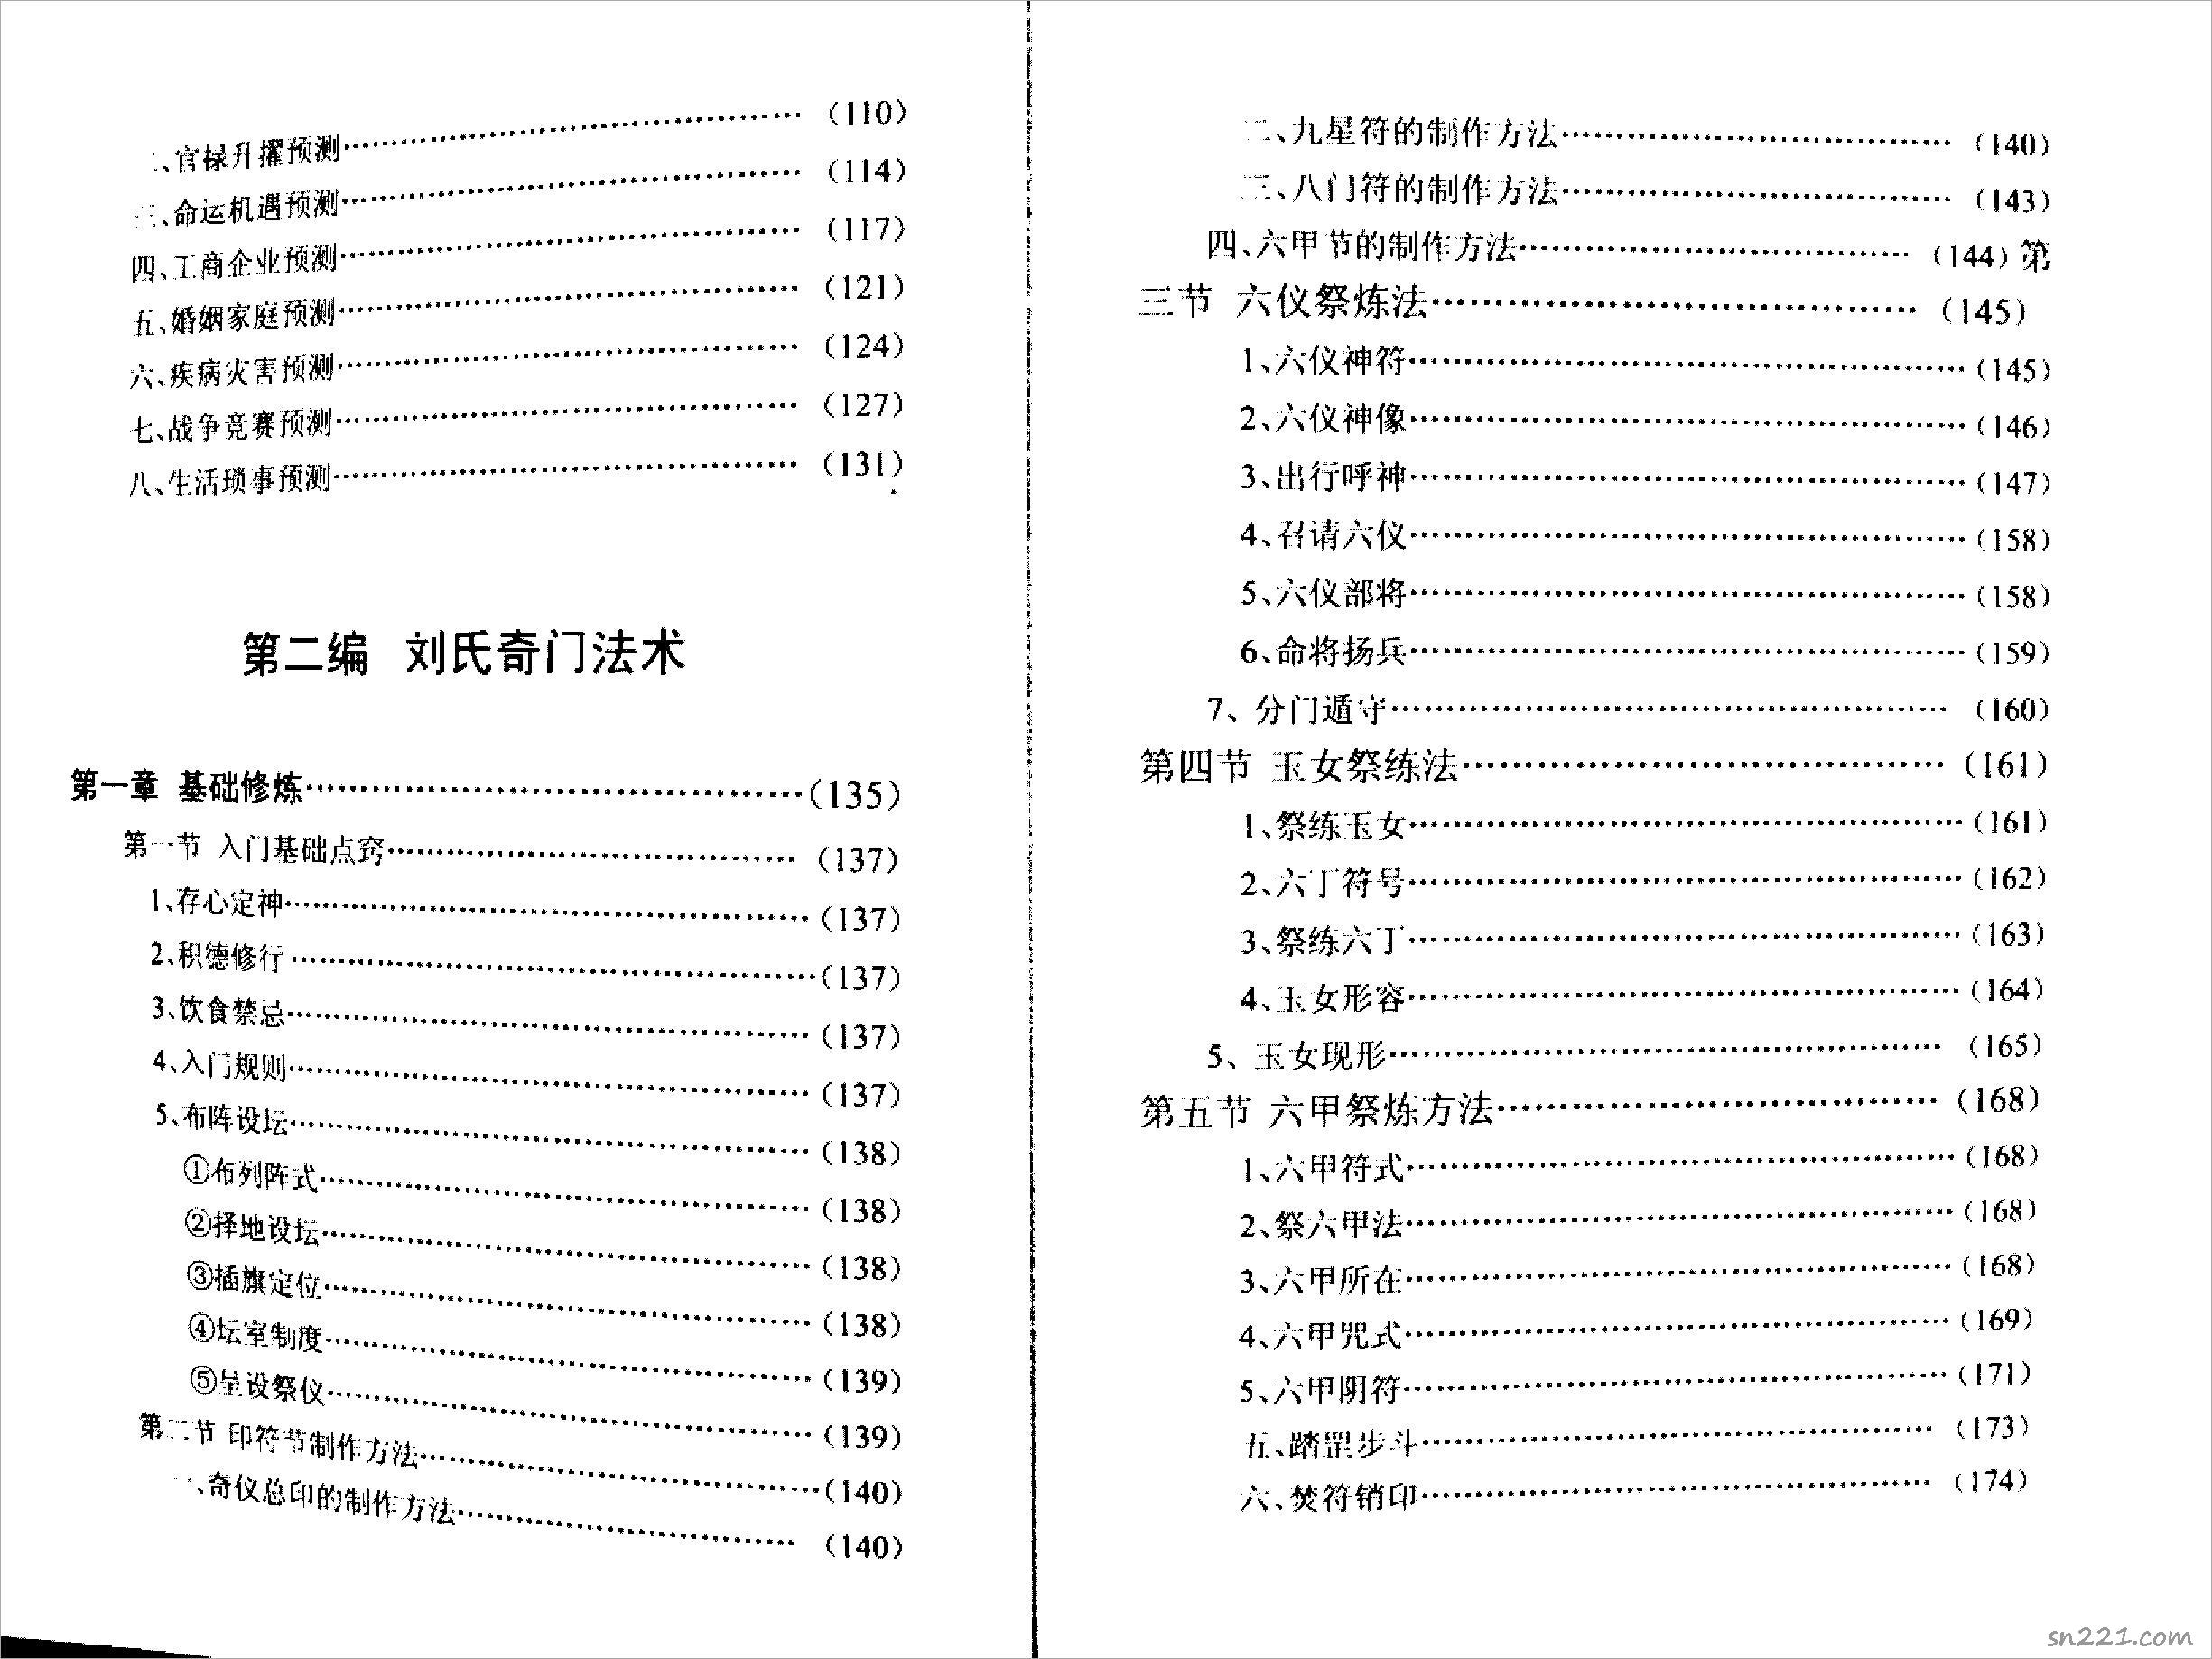 劉氏奇門秘籙-第二編劉氏奇門法術  .pdf